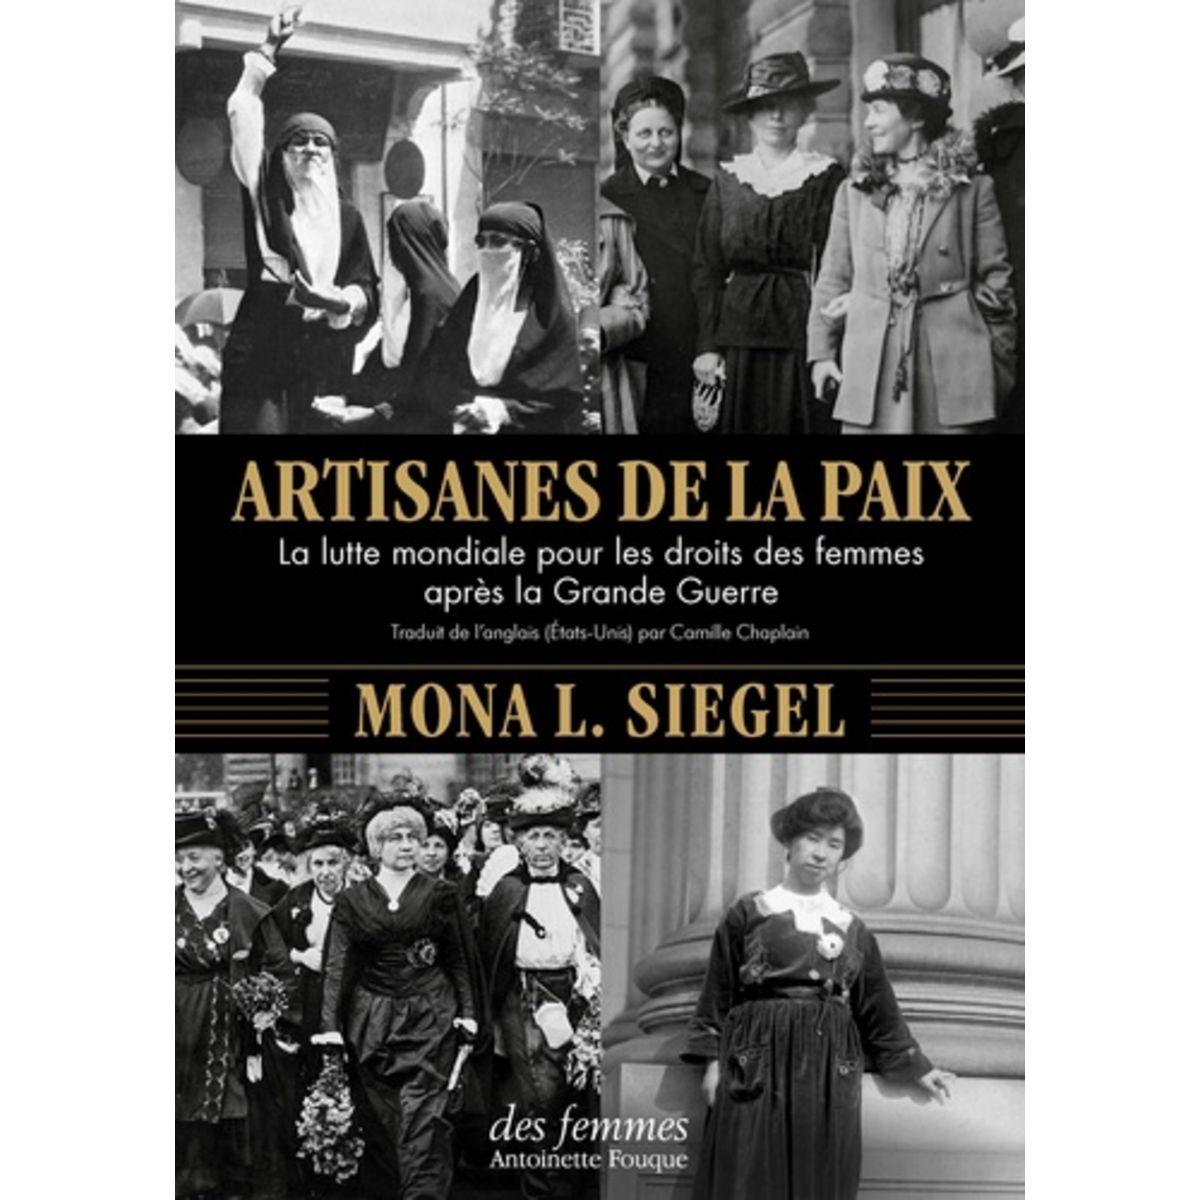  ARTISANES DE LA PAIX. LA LUTTE MONDIALE POUR LES DROITS DES FEMMES APRES LA GRANDE GUERRE, Siegel Mona L.